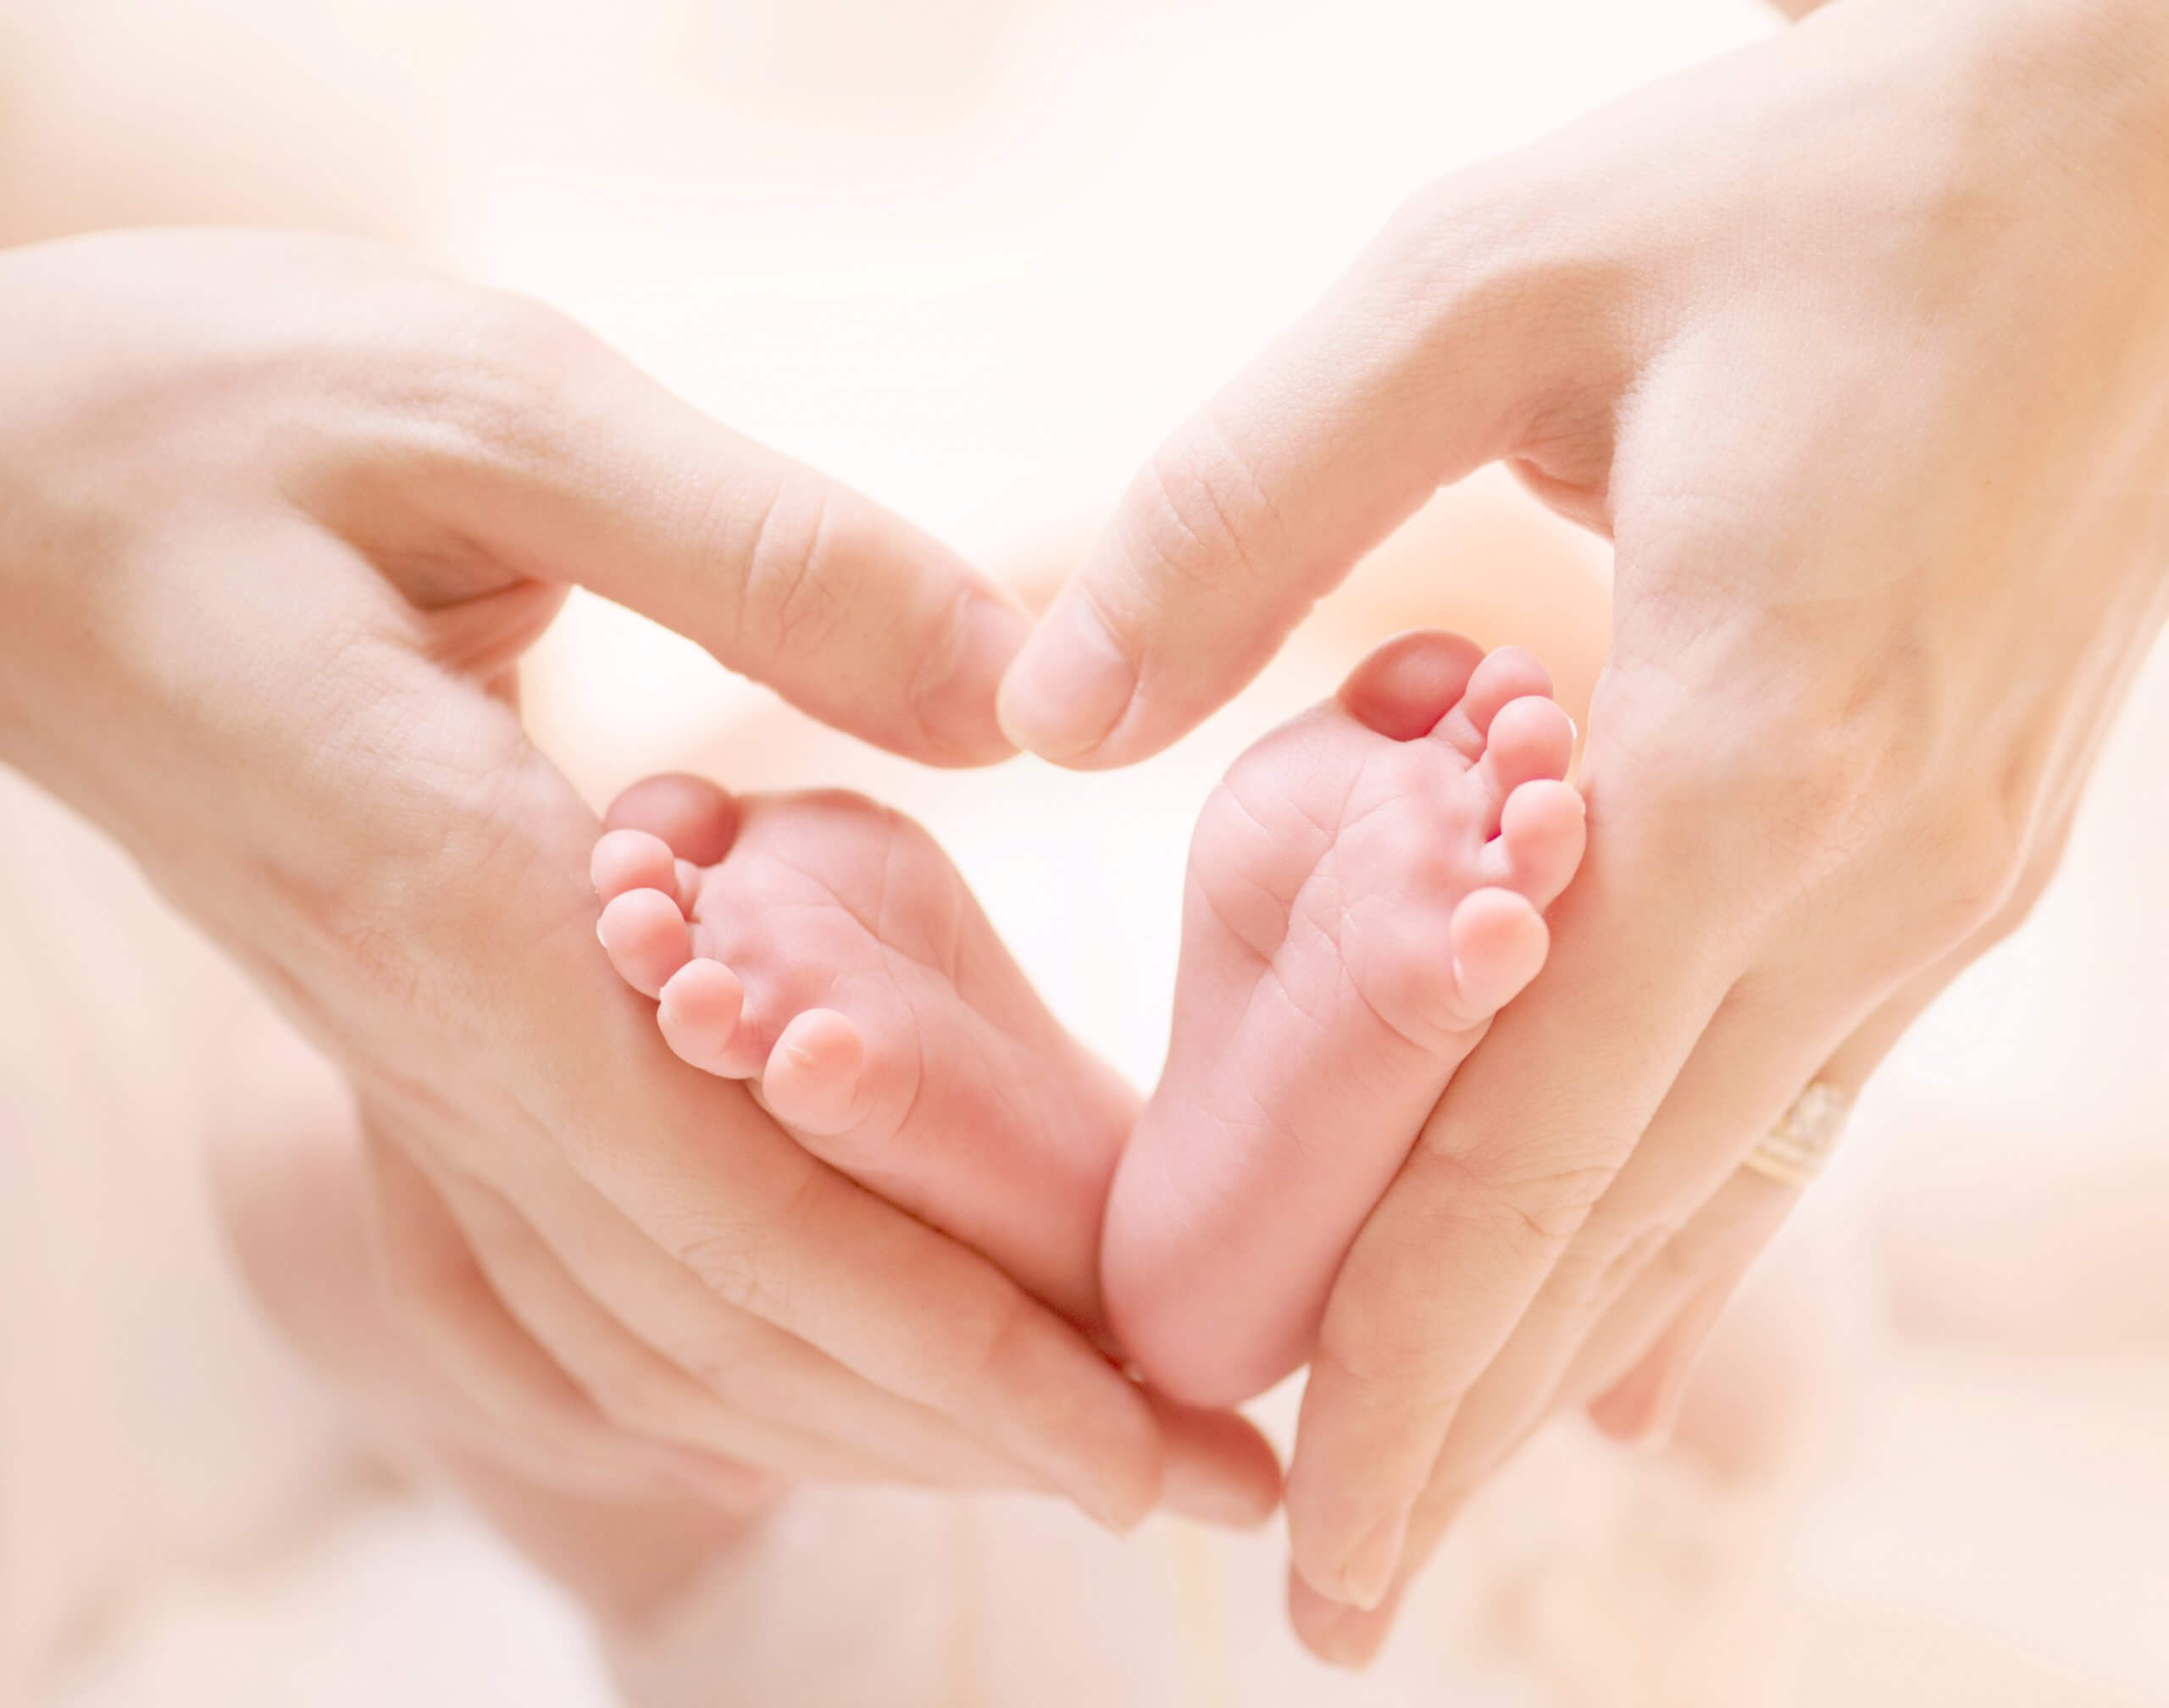 Baby Feet in Mother's Hands